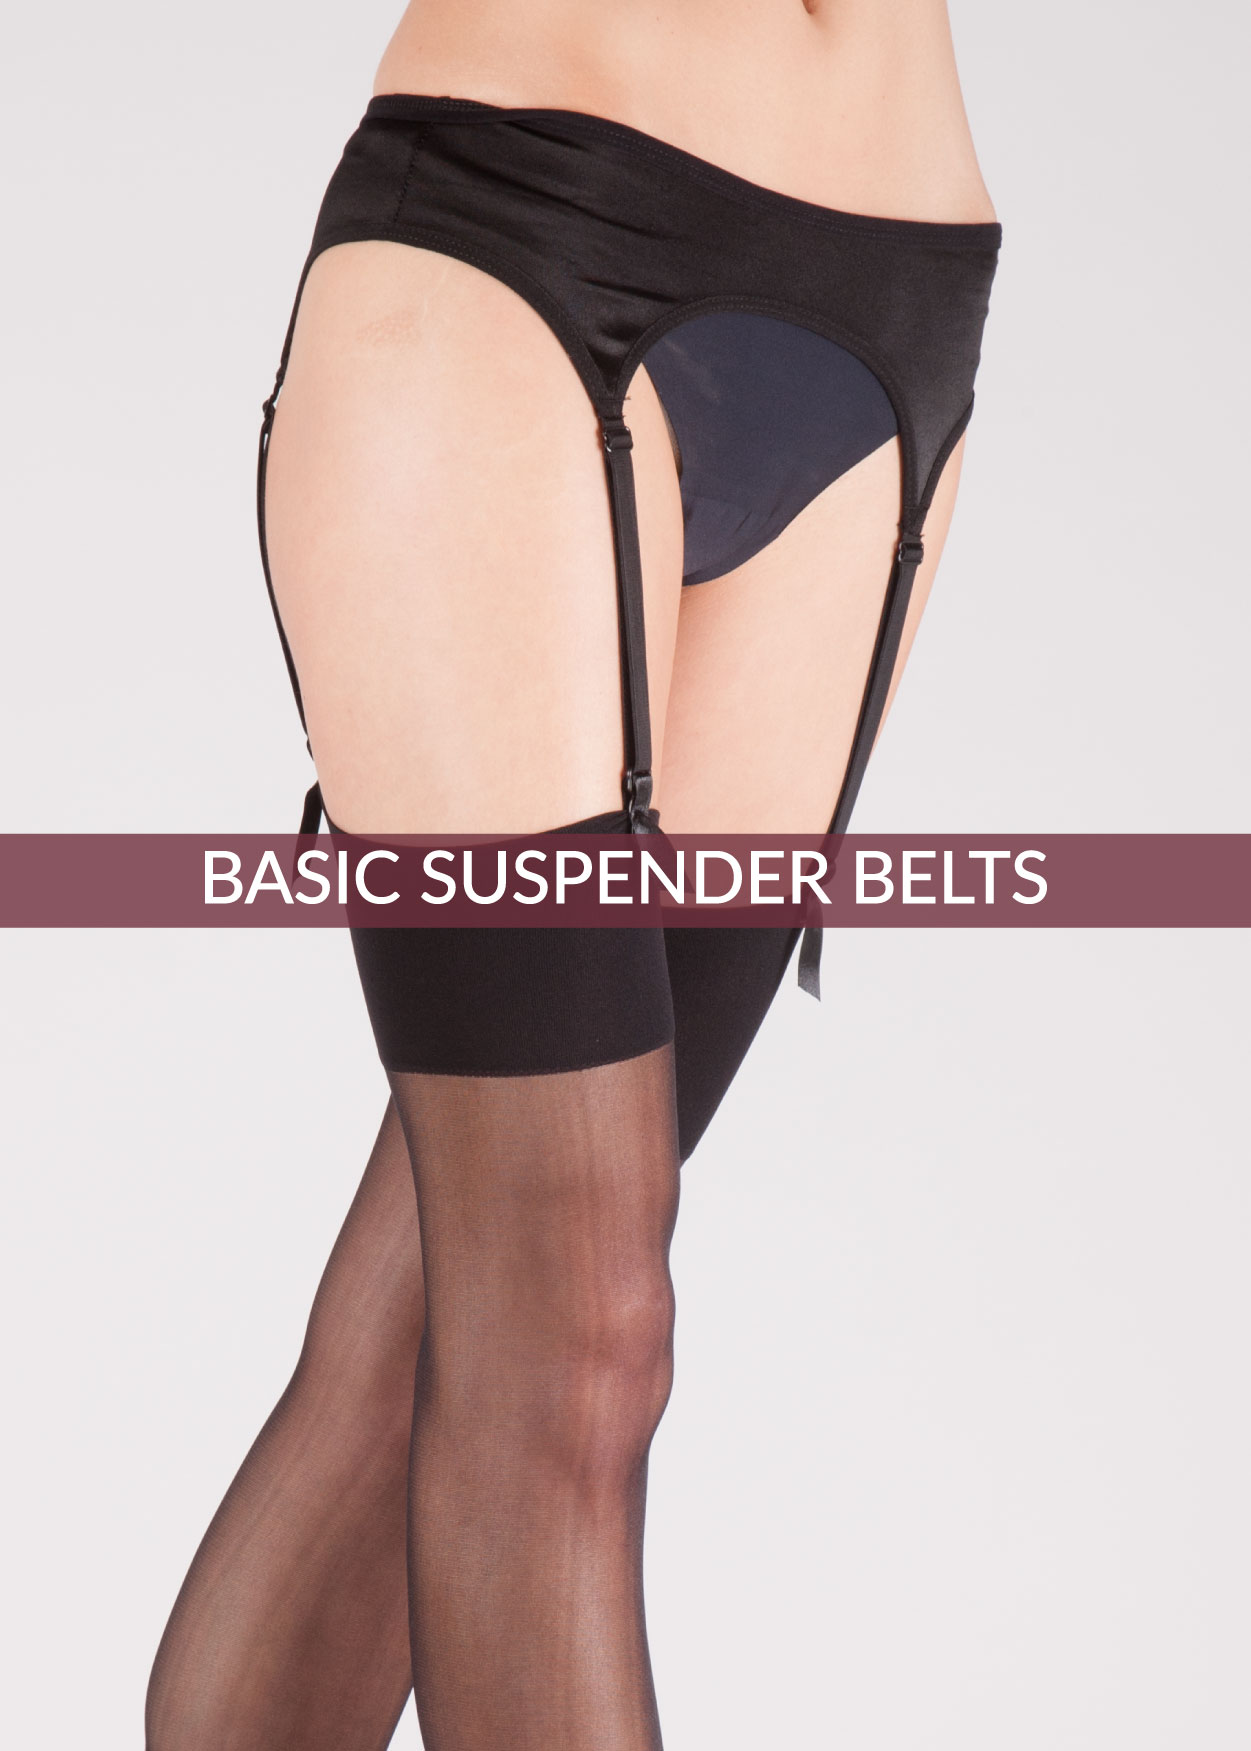 Basic Suspender Belts